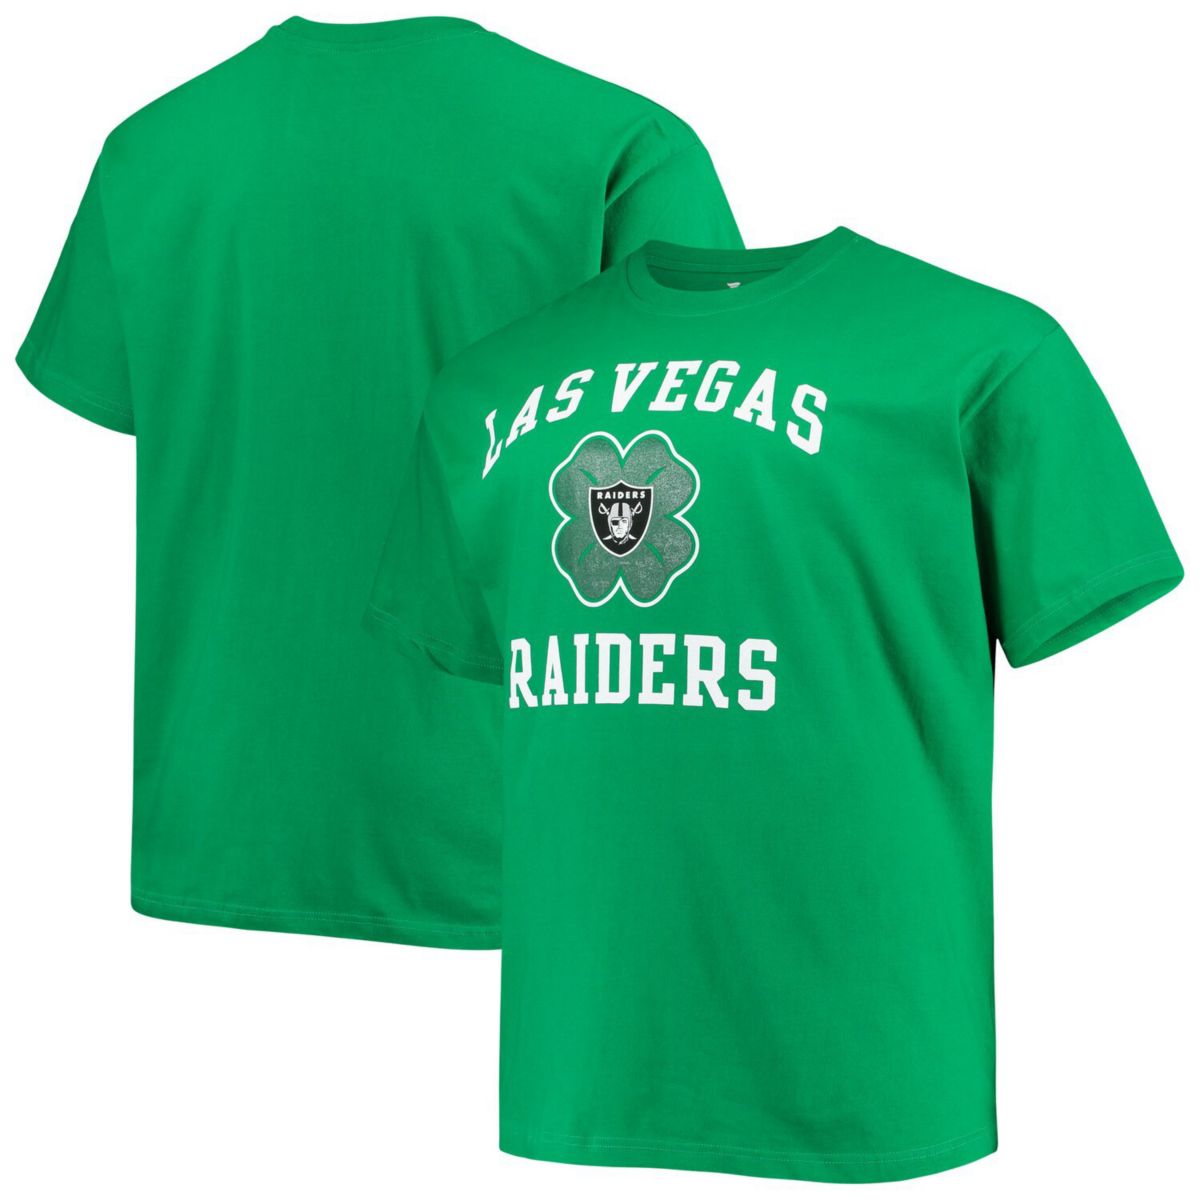 Мужская футболка с логотипом фанатиков Kelly Green Las Vegas Raiders Big & Tall, кельтская футболка ко Дню Святого Патрика Fanatics